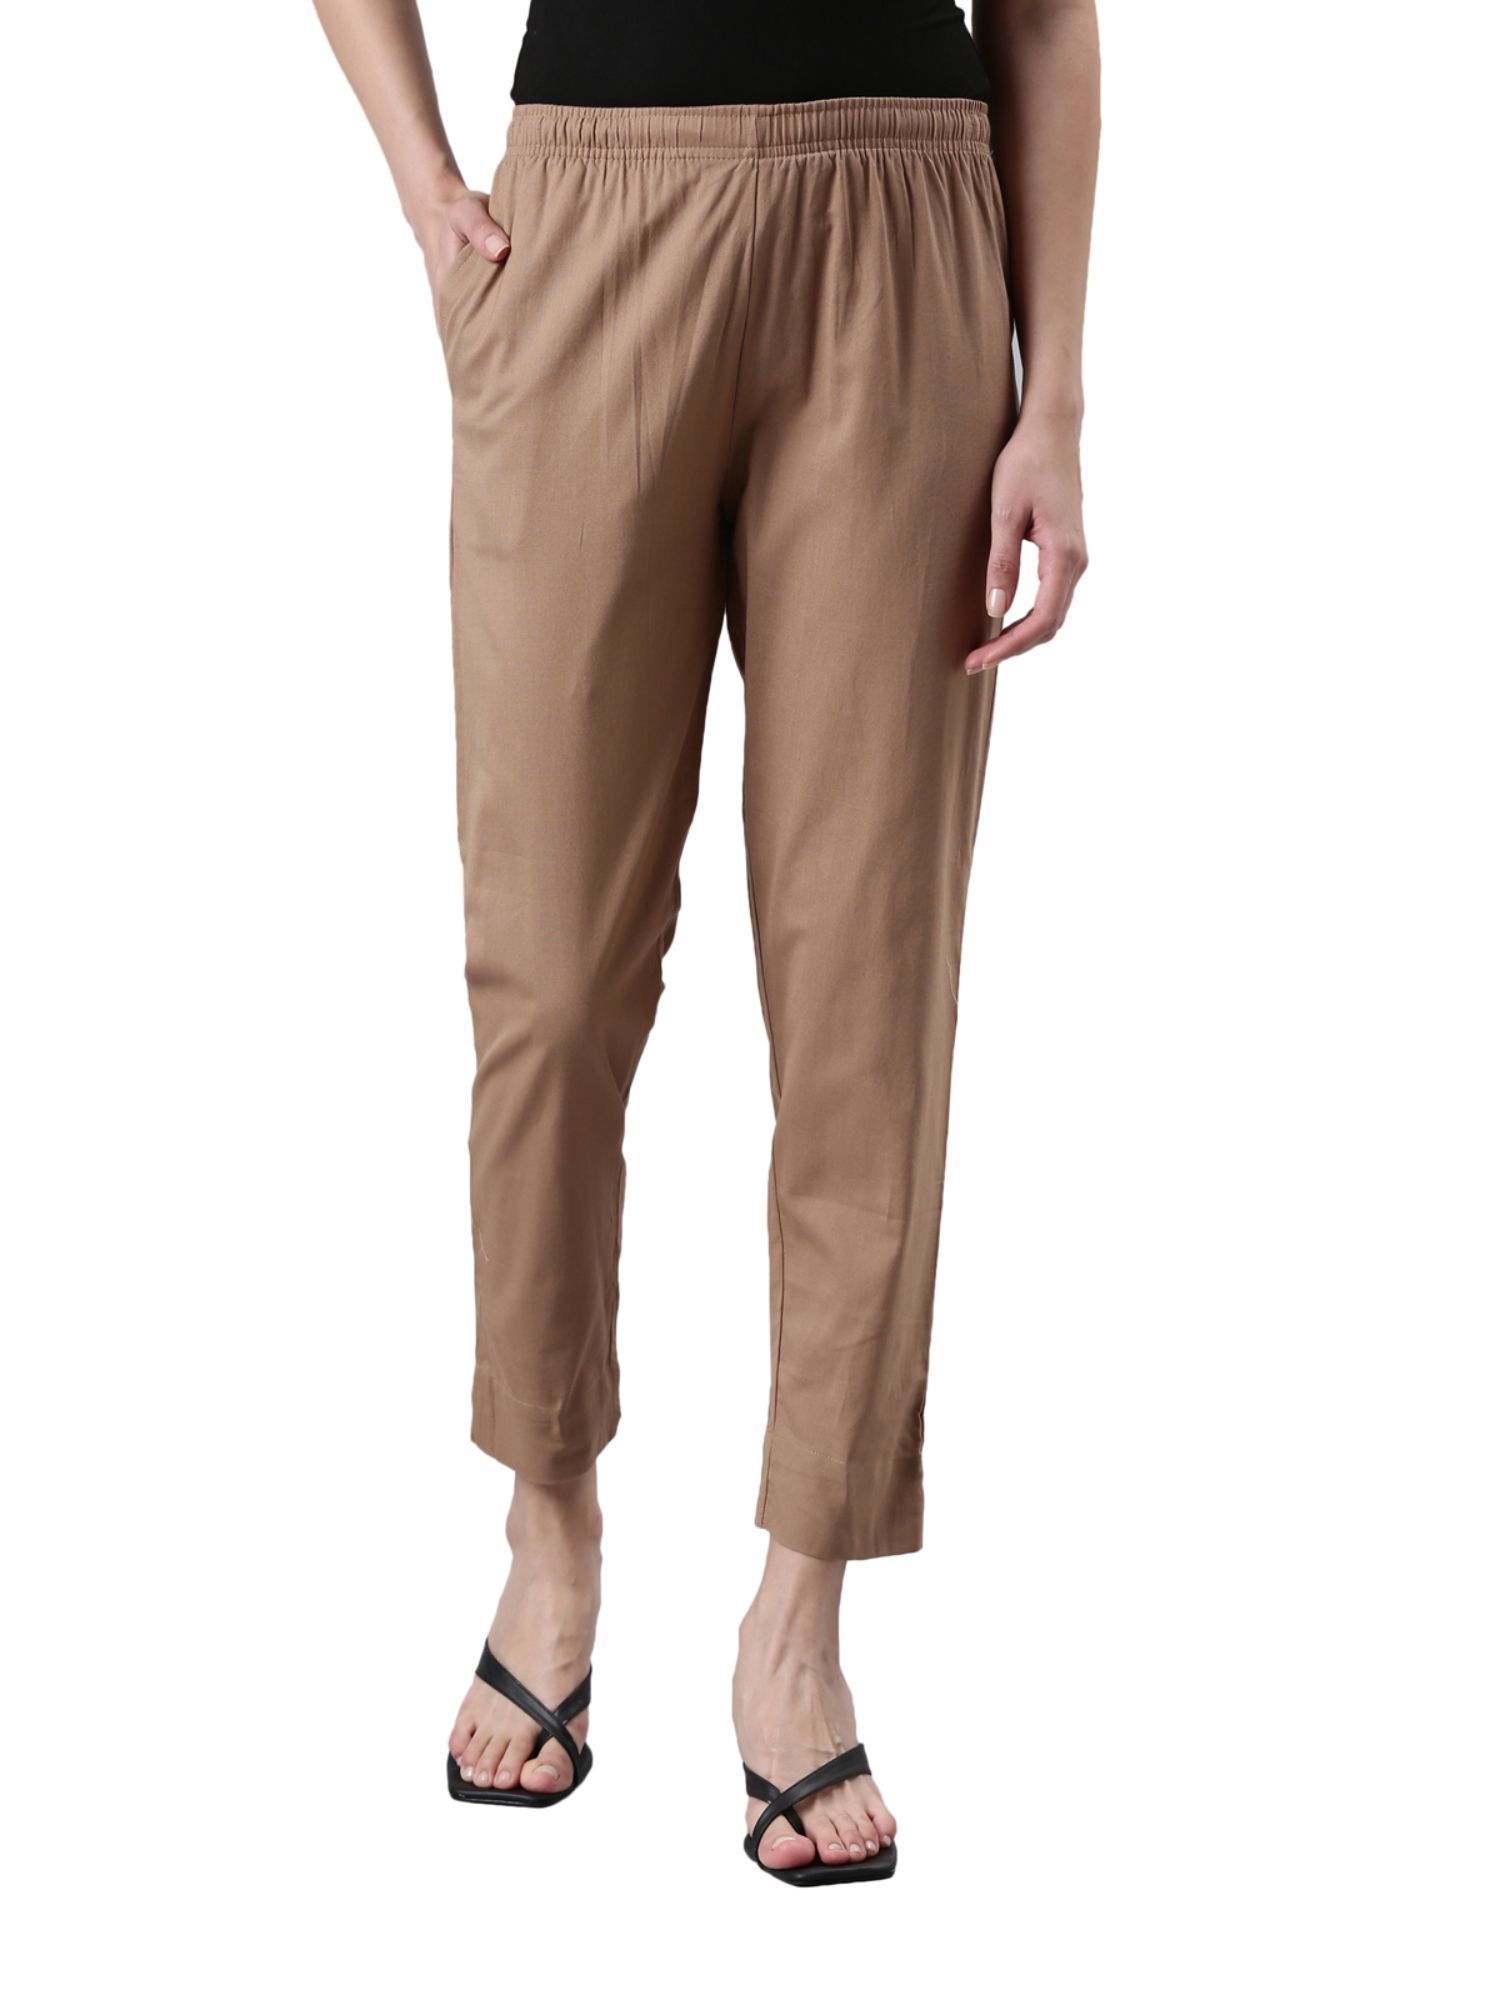 Poly Viscose Slim Fit Men Light Brown Trouser at Rs 450 in Mumbai | ID:  20847639530